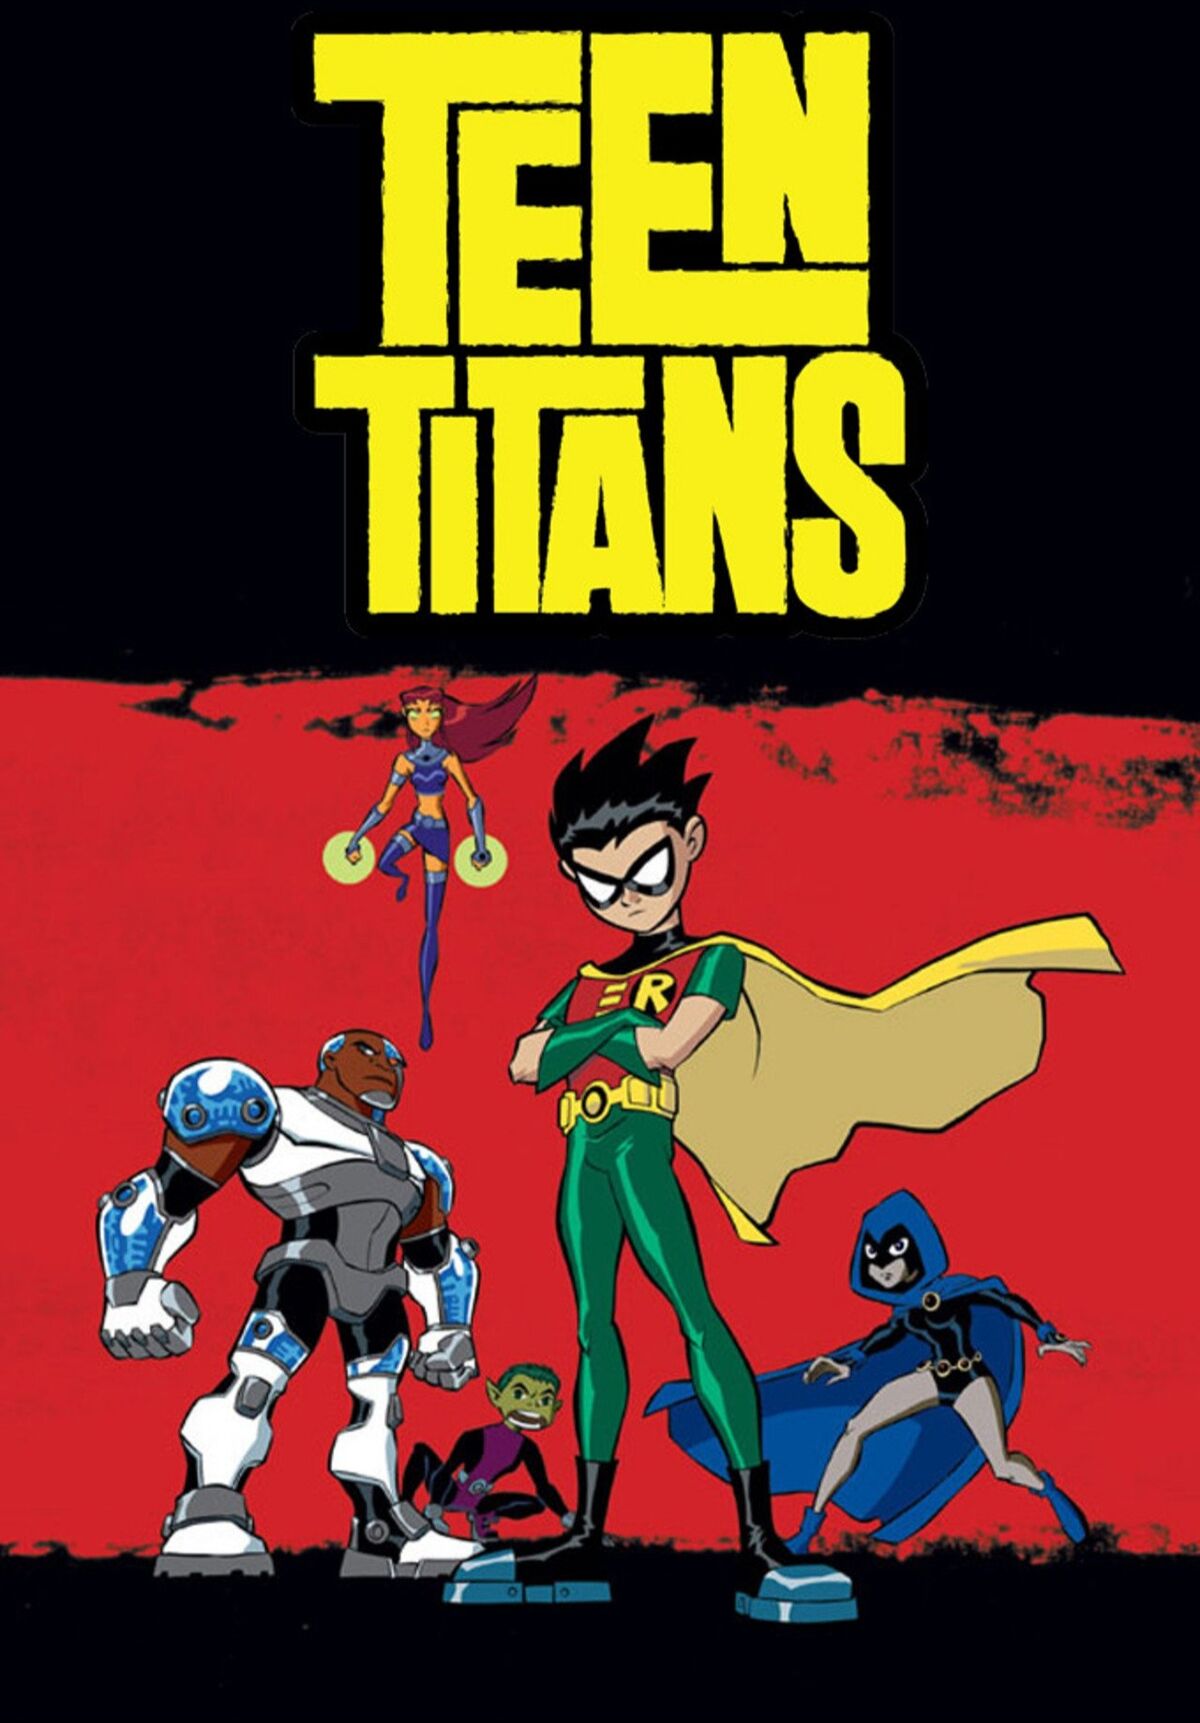 Sneak peek: Teen Titans meet the Powerpuff Girls for cartoon crossover